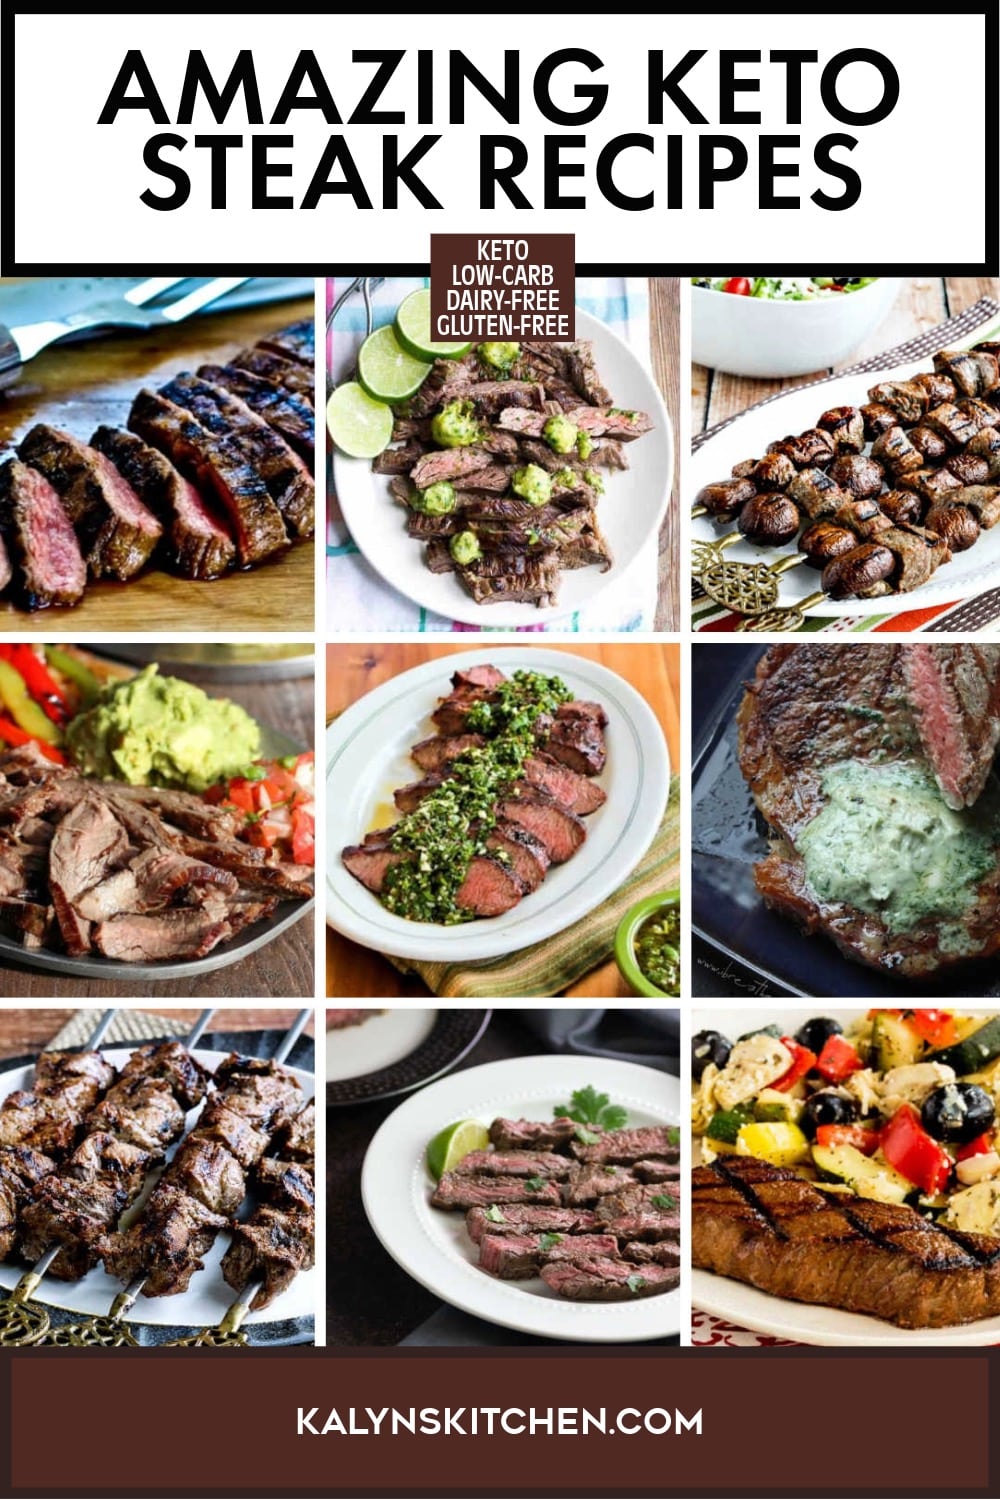 Pinterest image of Amazing Keto Steak Recipes